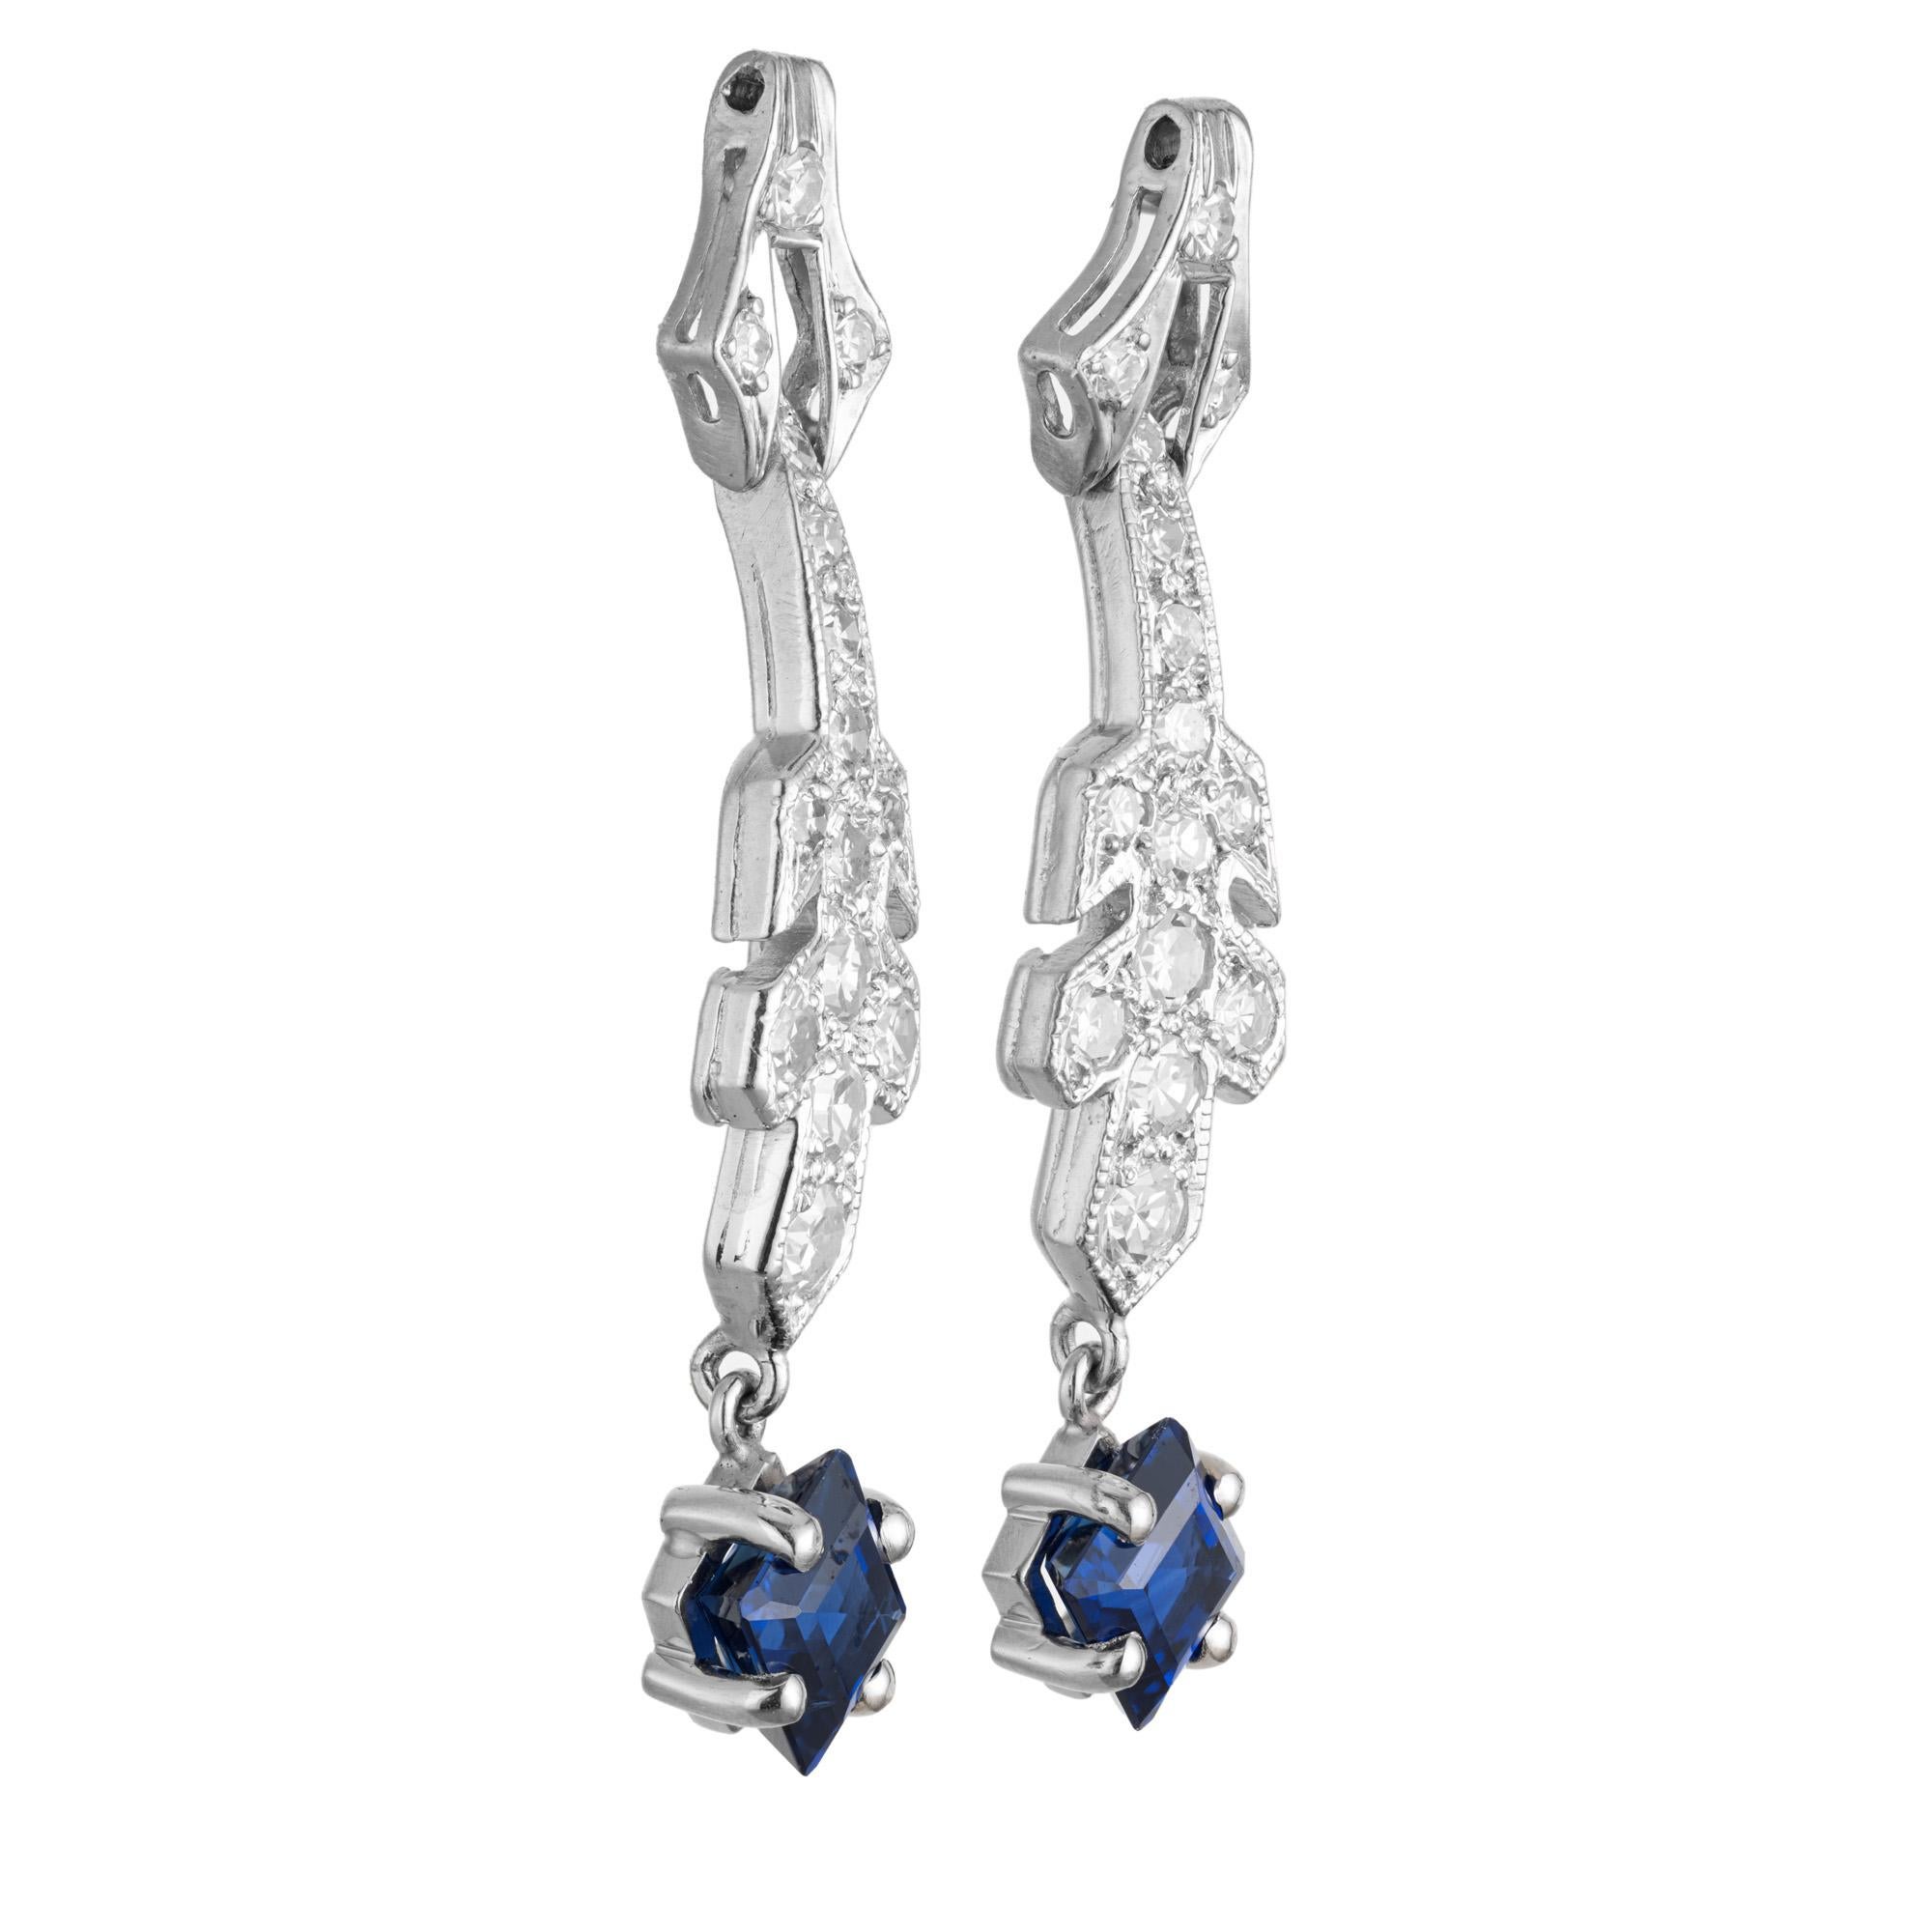 Art-Deco-Ohrringe mit Saphiren und Diamanten, die an einem Ohrring baumeln. Diese Ohrhänger aus den 1920er Jahren bestehen aus 2 achteckigen Saphiren, die in zwei Platinfassungen sitzen, die mit 30 Diamanten im Einzelschliff besetzt sind. Beide